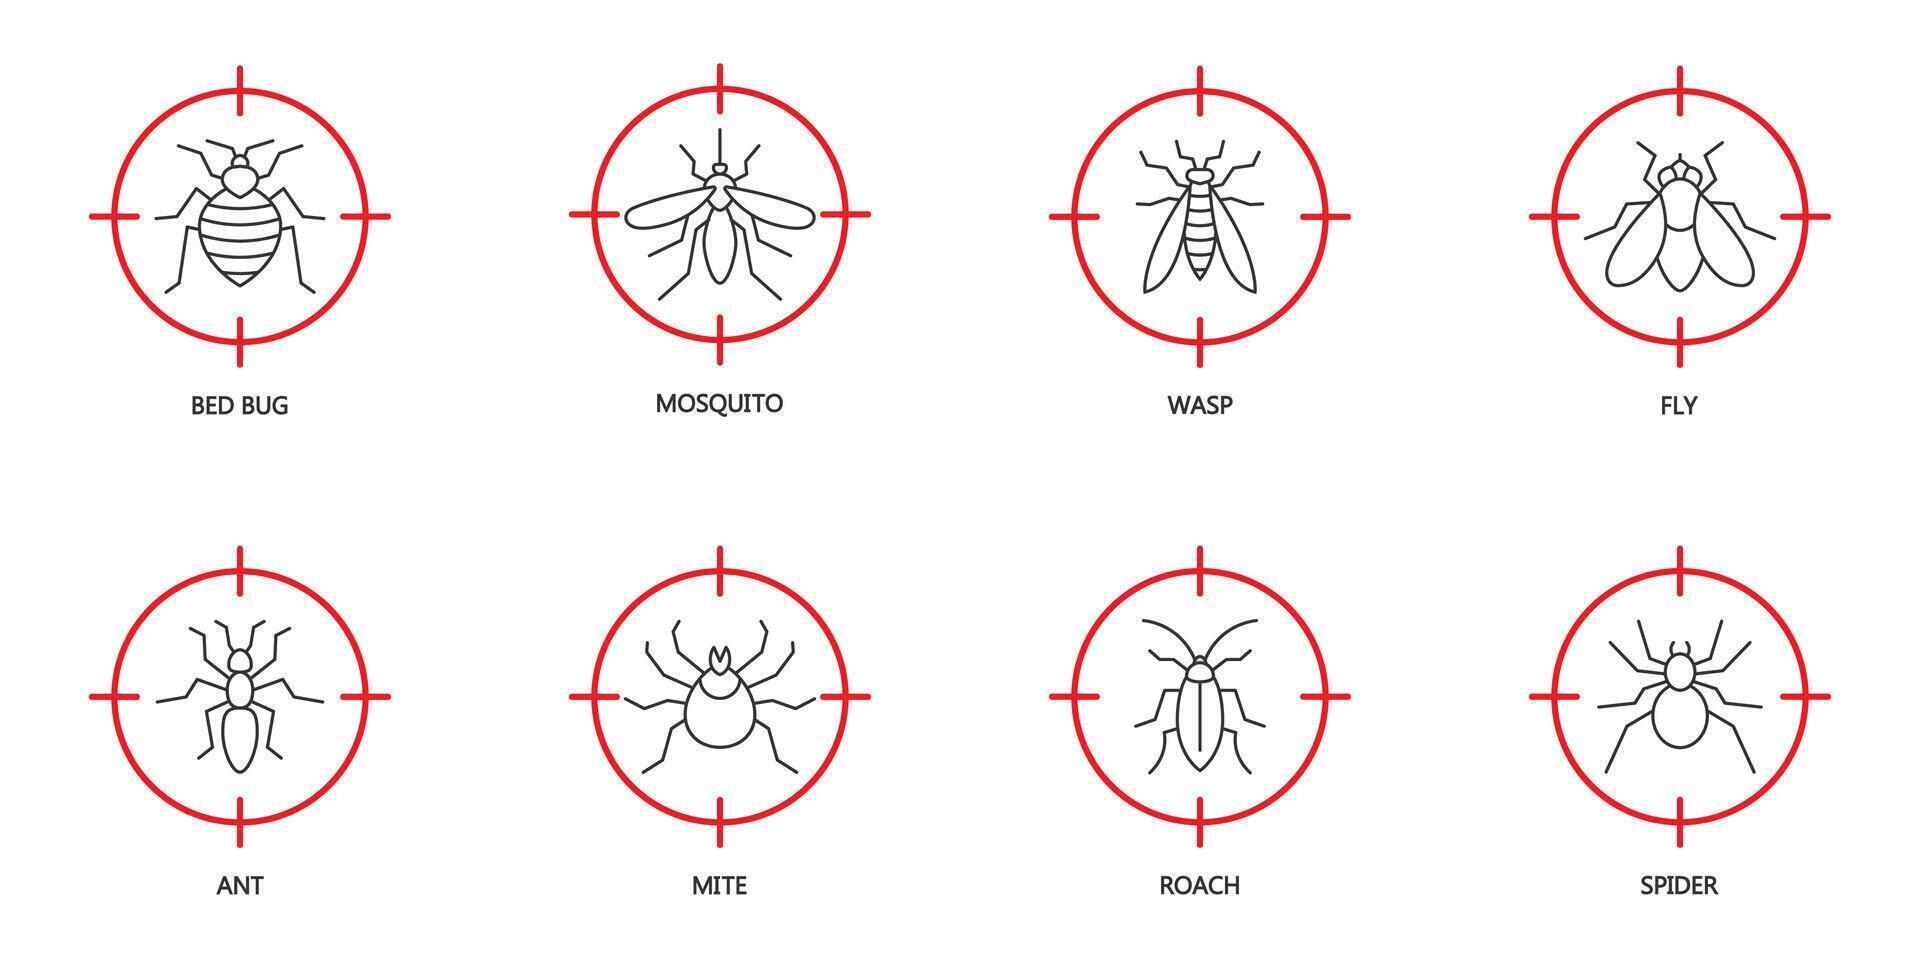 halt Insekt Symbol Satz. Pest Steuerung Symbole einstellen auf rot Ziel. Insekten beim mit vorgehaltener Waffe. Bett Insekt, Moskito, Wespe, Fliege, Ameise, Milbe, Plötze, und Spinne Symbole. Vektor Illustration.